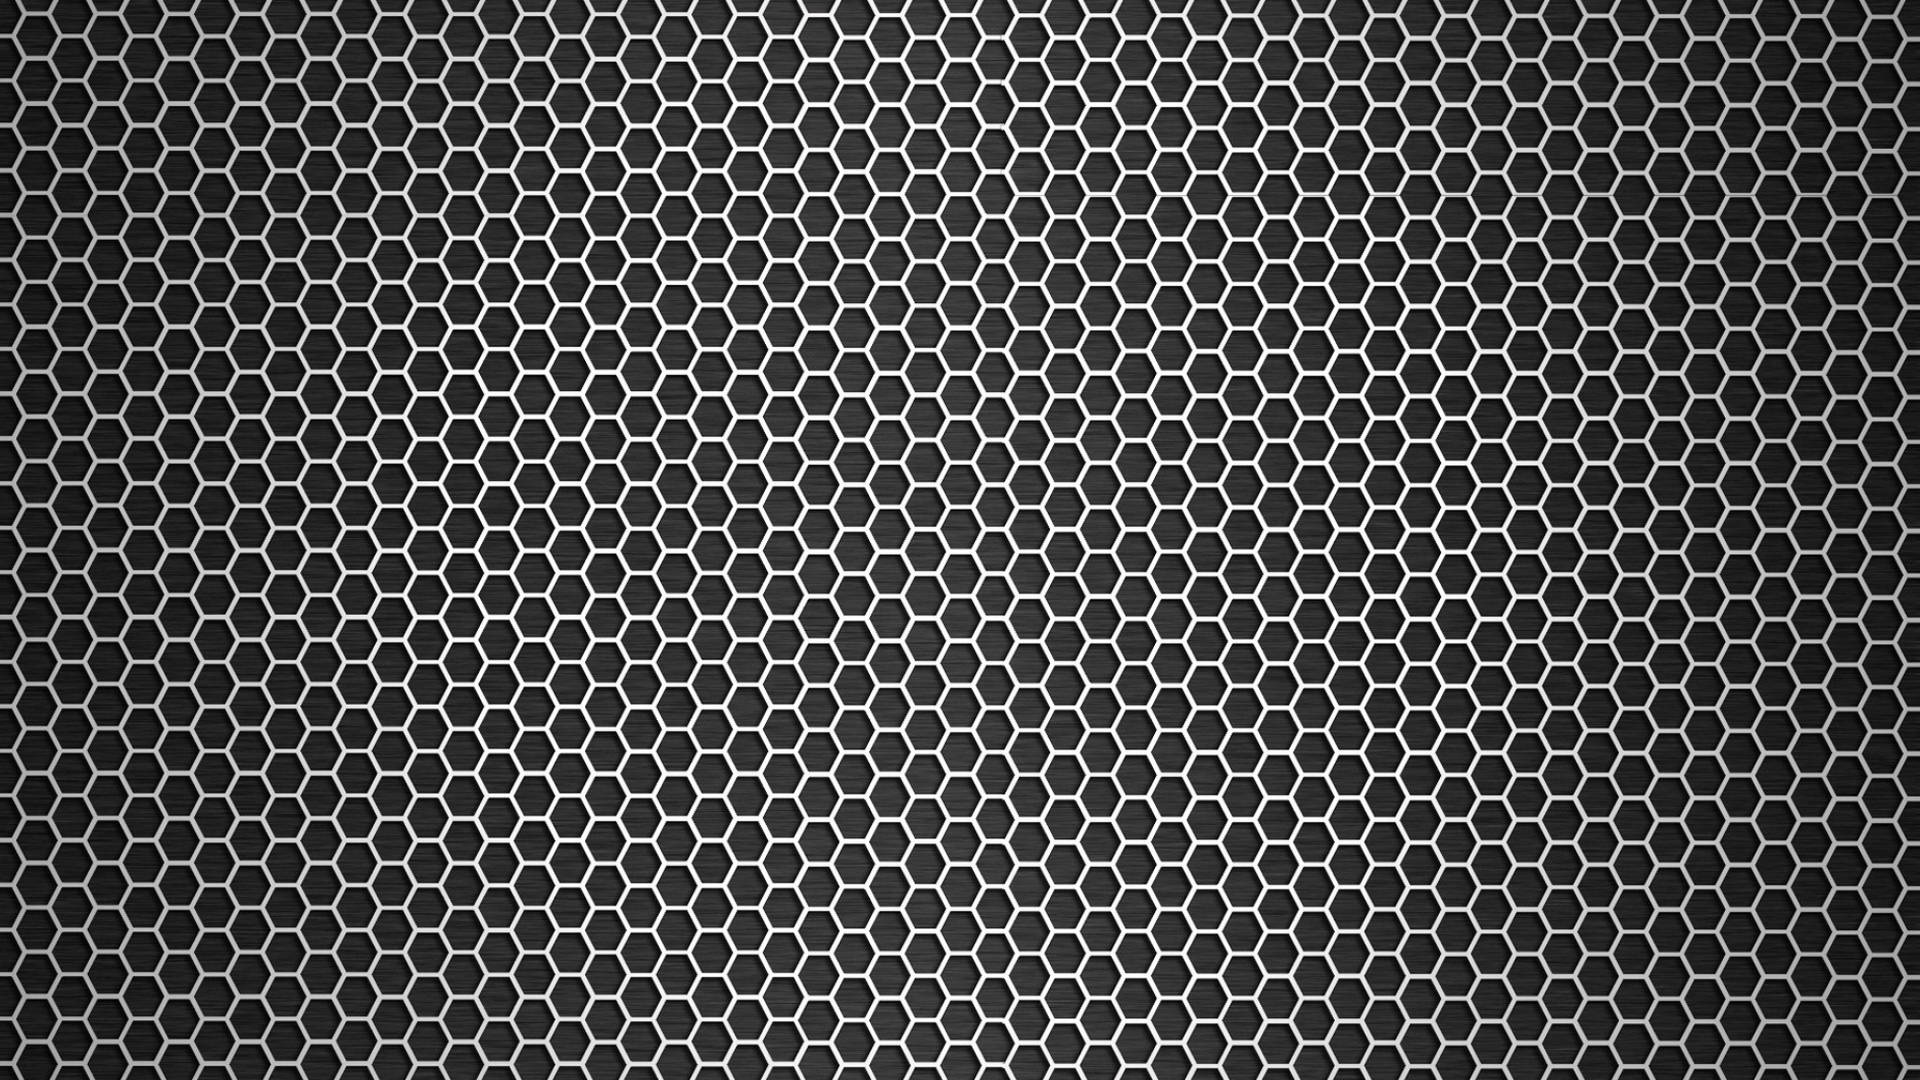 Metallisk tekstur Hexagonal hul mønster tapet Wallpaper